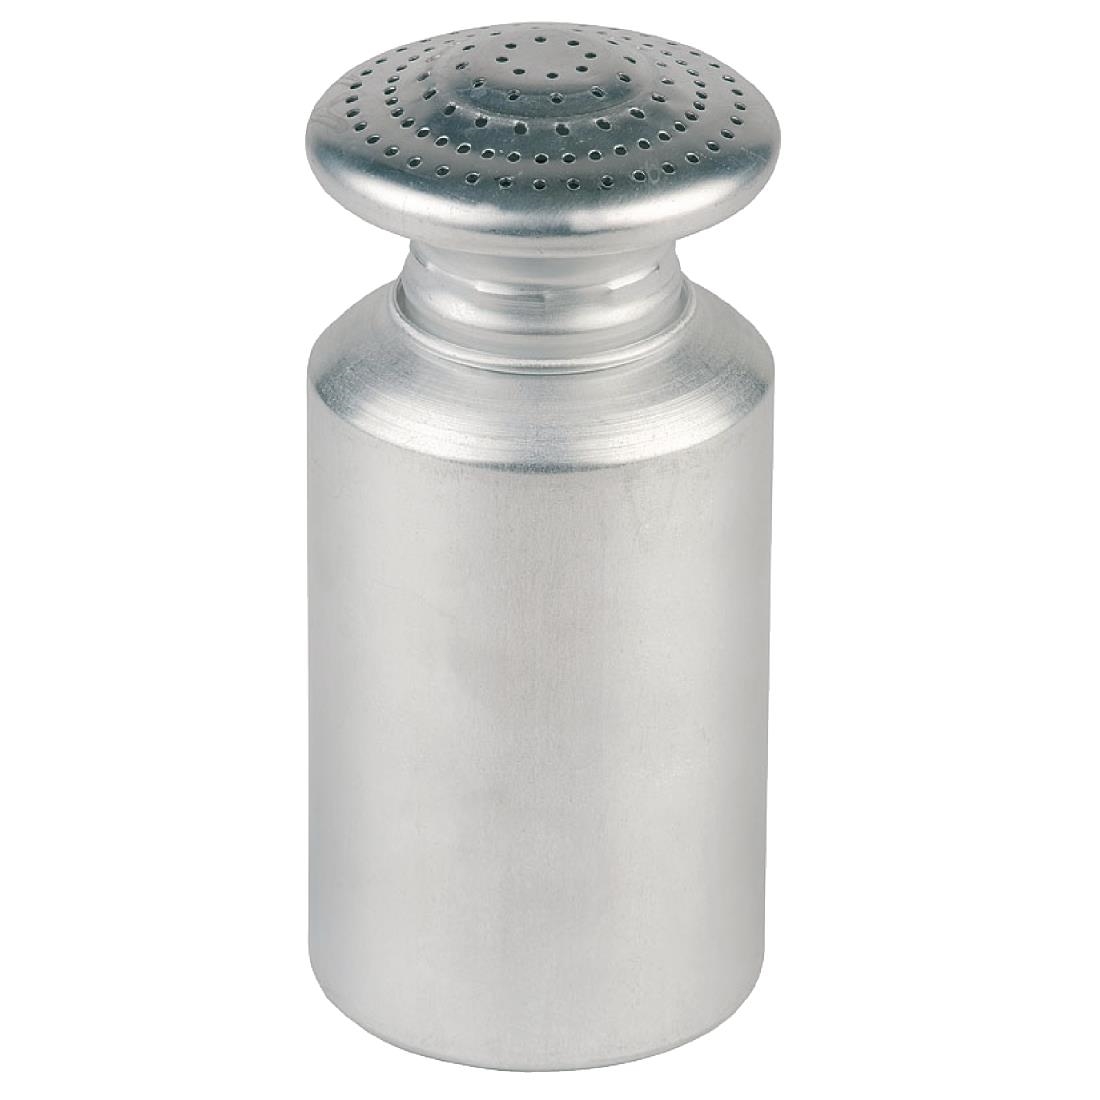 Aluminium Salt Shaker